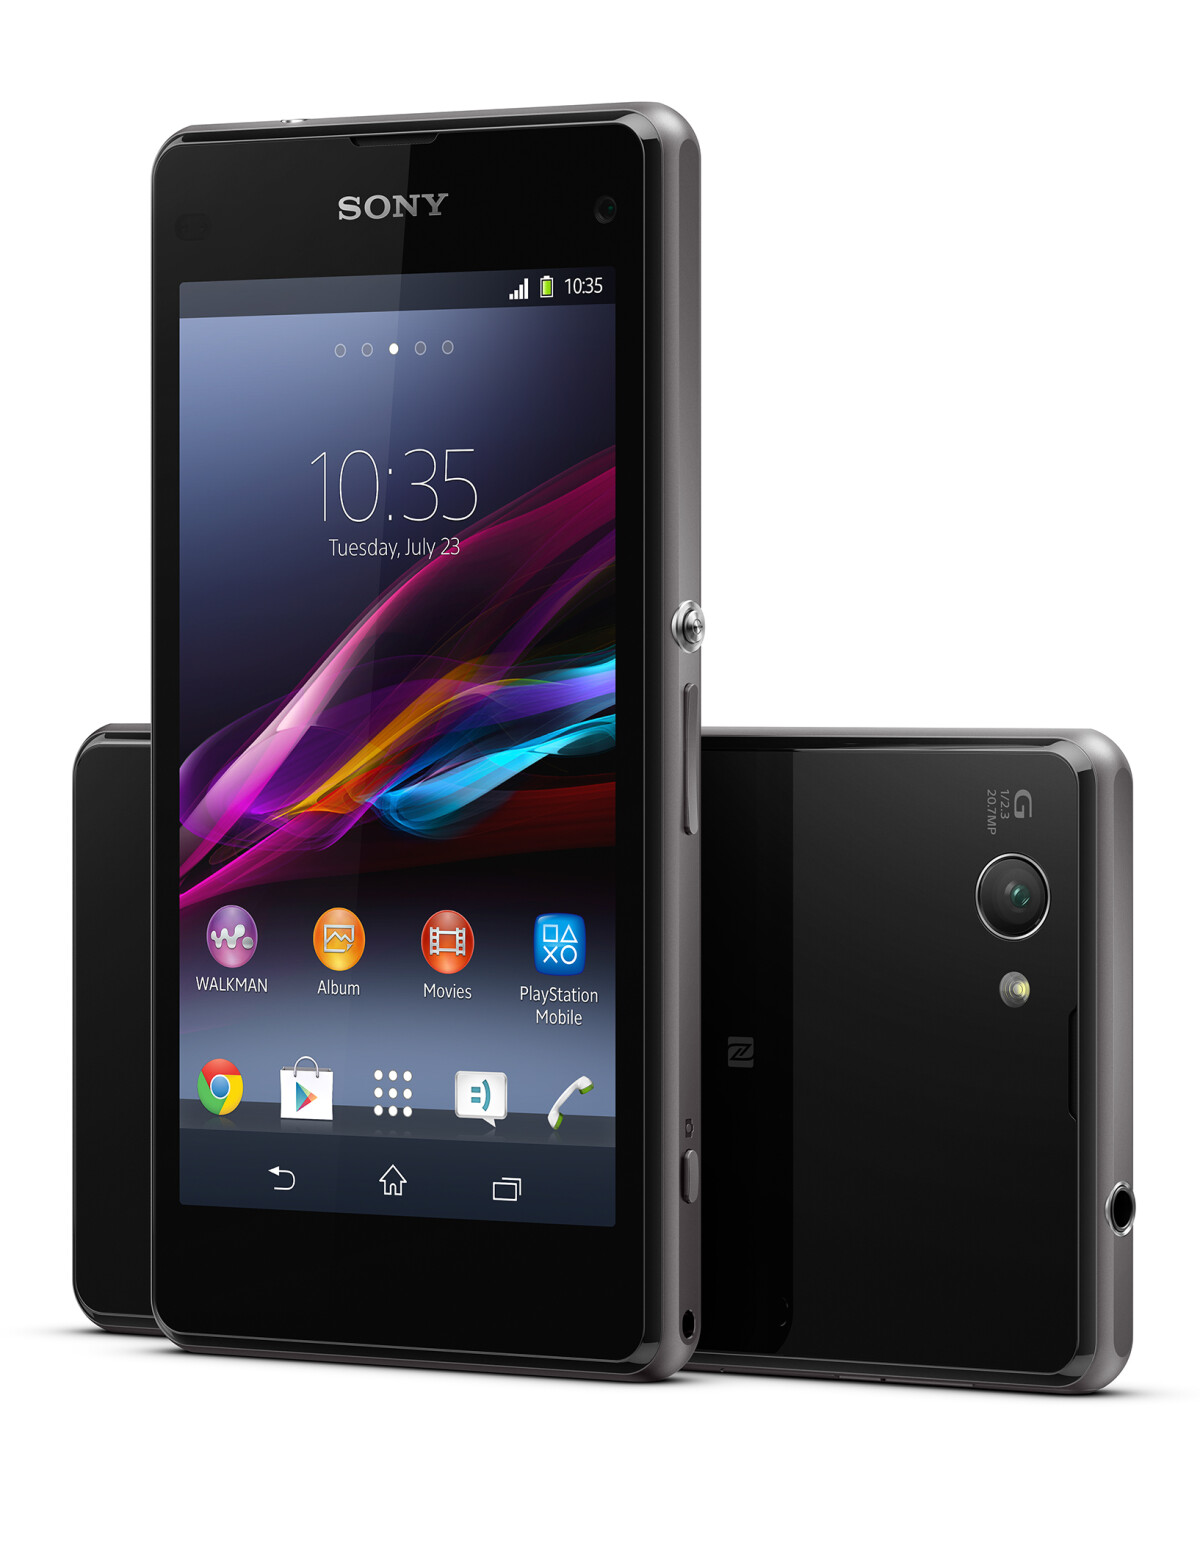 Surrey Bevestigen aan Snor Sony Xperia Z1 Compact - Mobile News